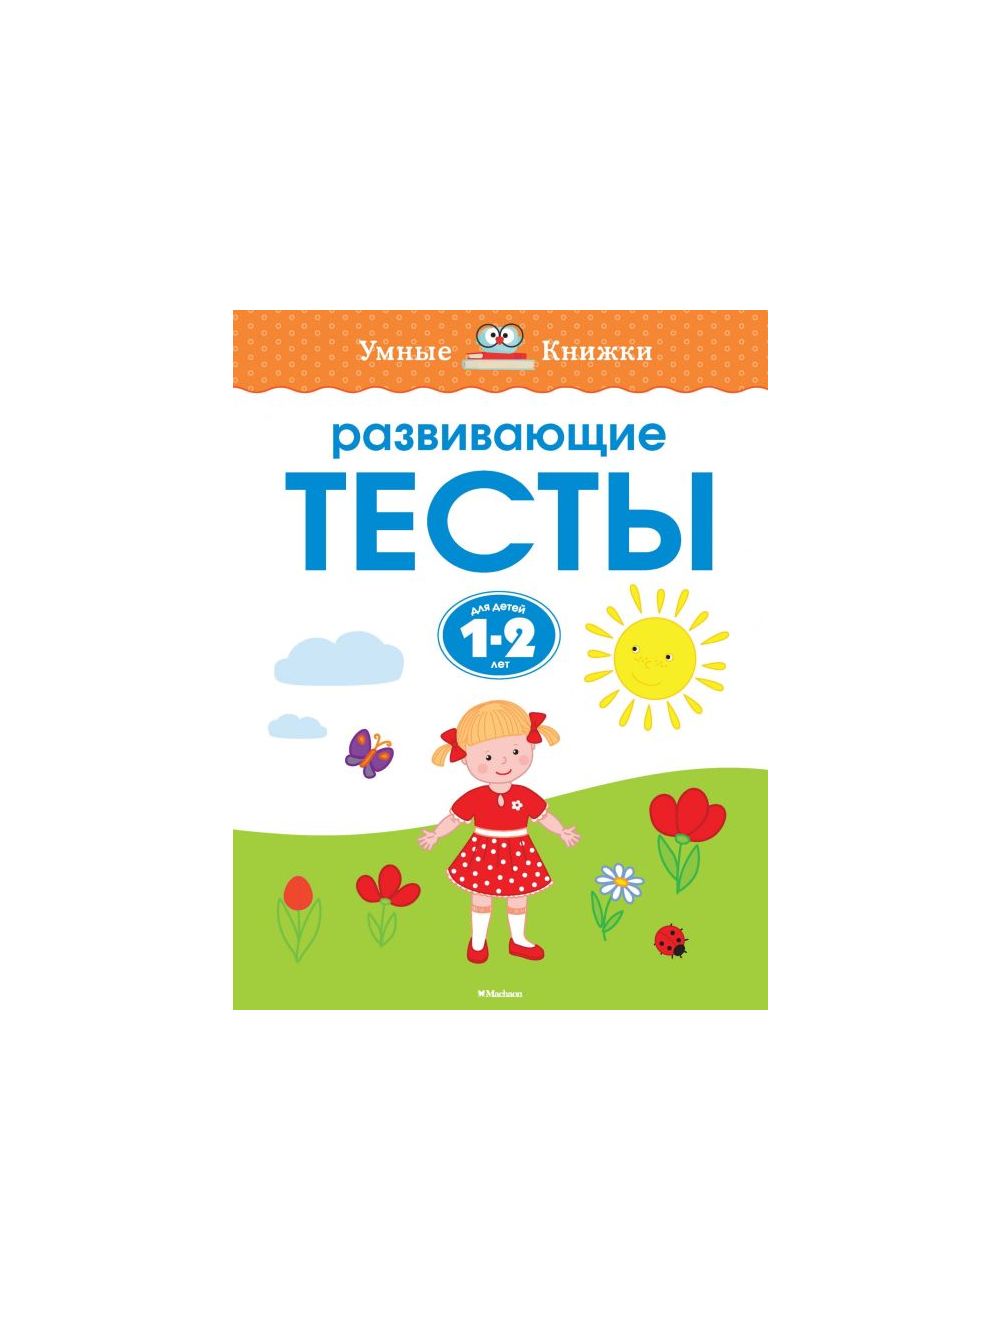 Купить развивающие книги для детей, цены на книжки-развивашки в Москве от издательства Clever